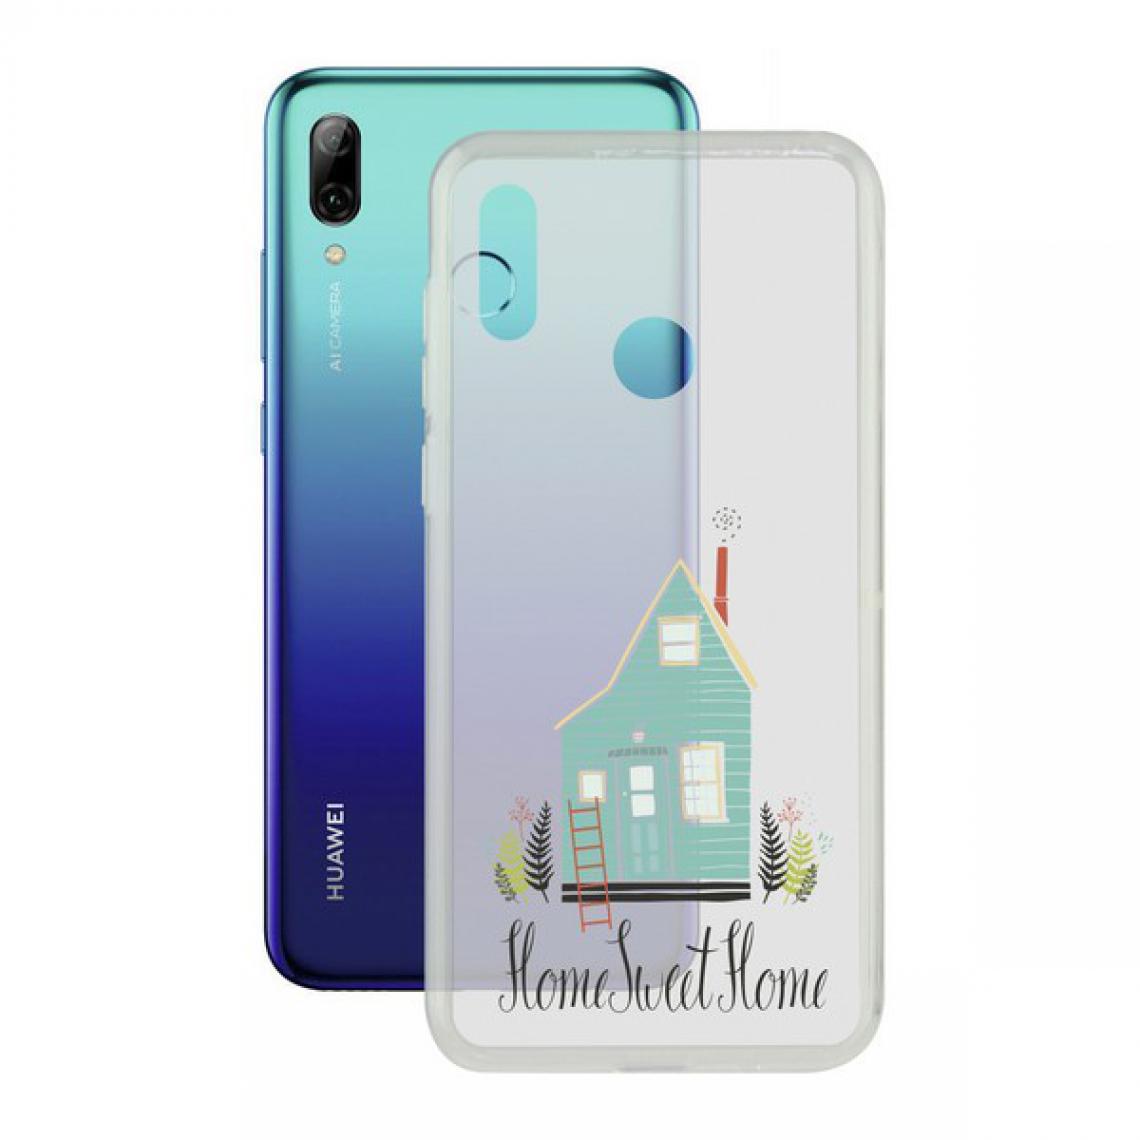 Uknow - Protection pour téléphone portable Huawei P Smart 2019 Home Contact Flex Home TPU - Coque, étui smartphone